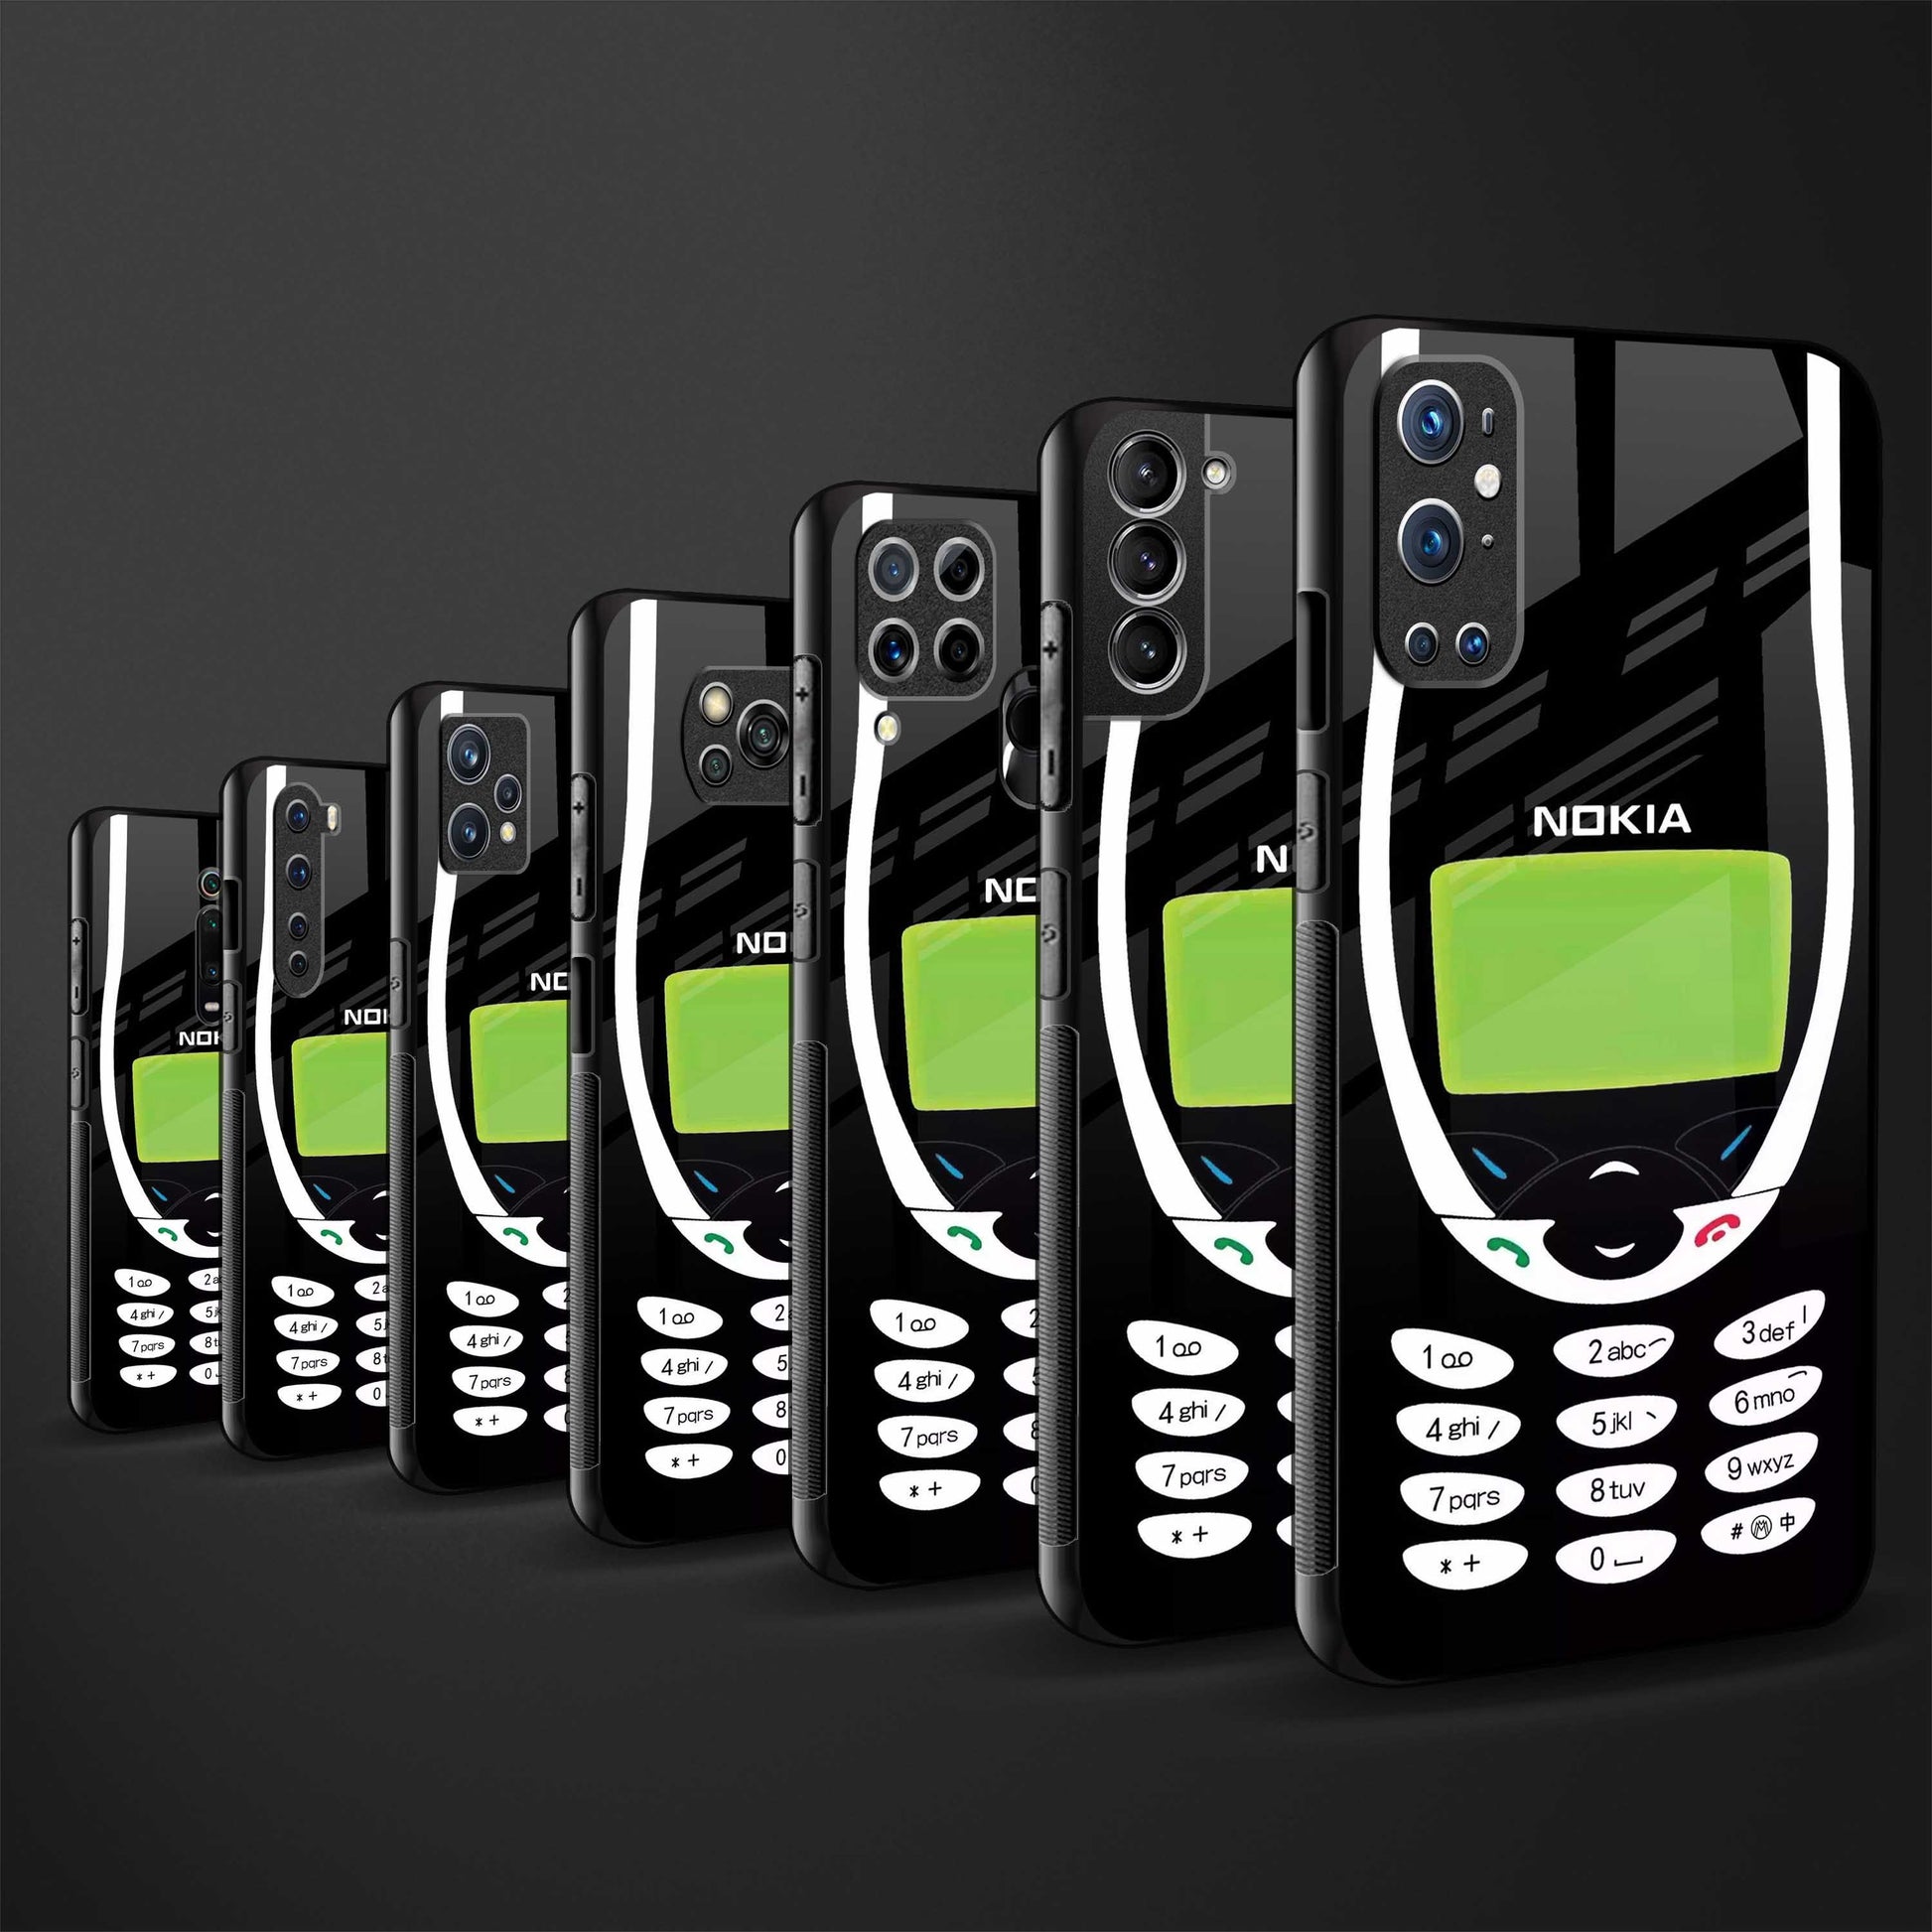 nokia 810 phone case